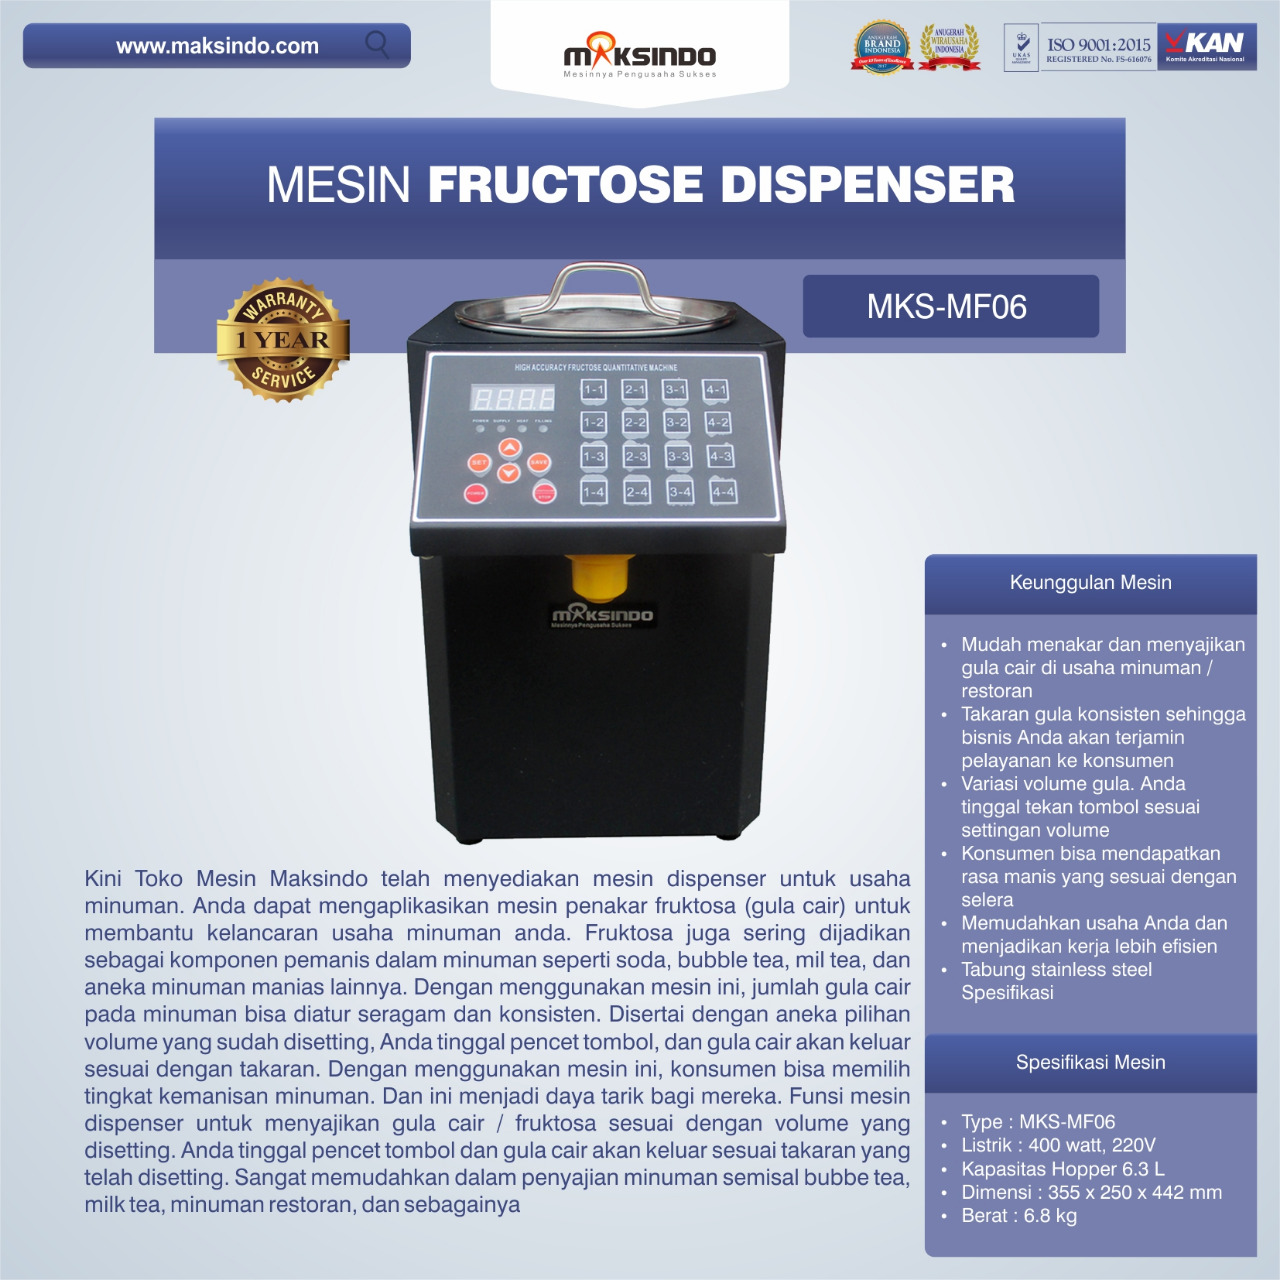 Mesin Fructose Dispenser MKS-MF06